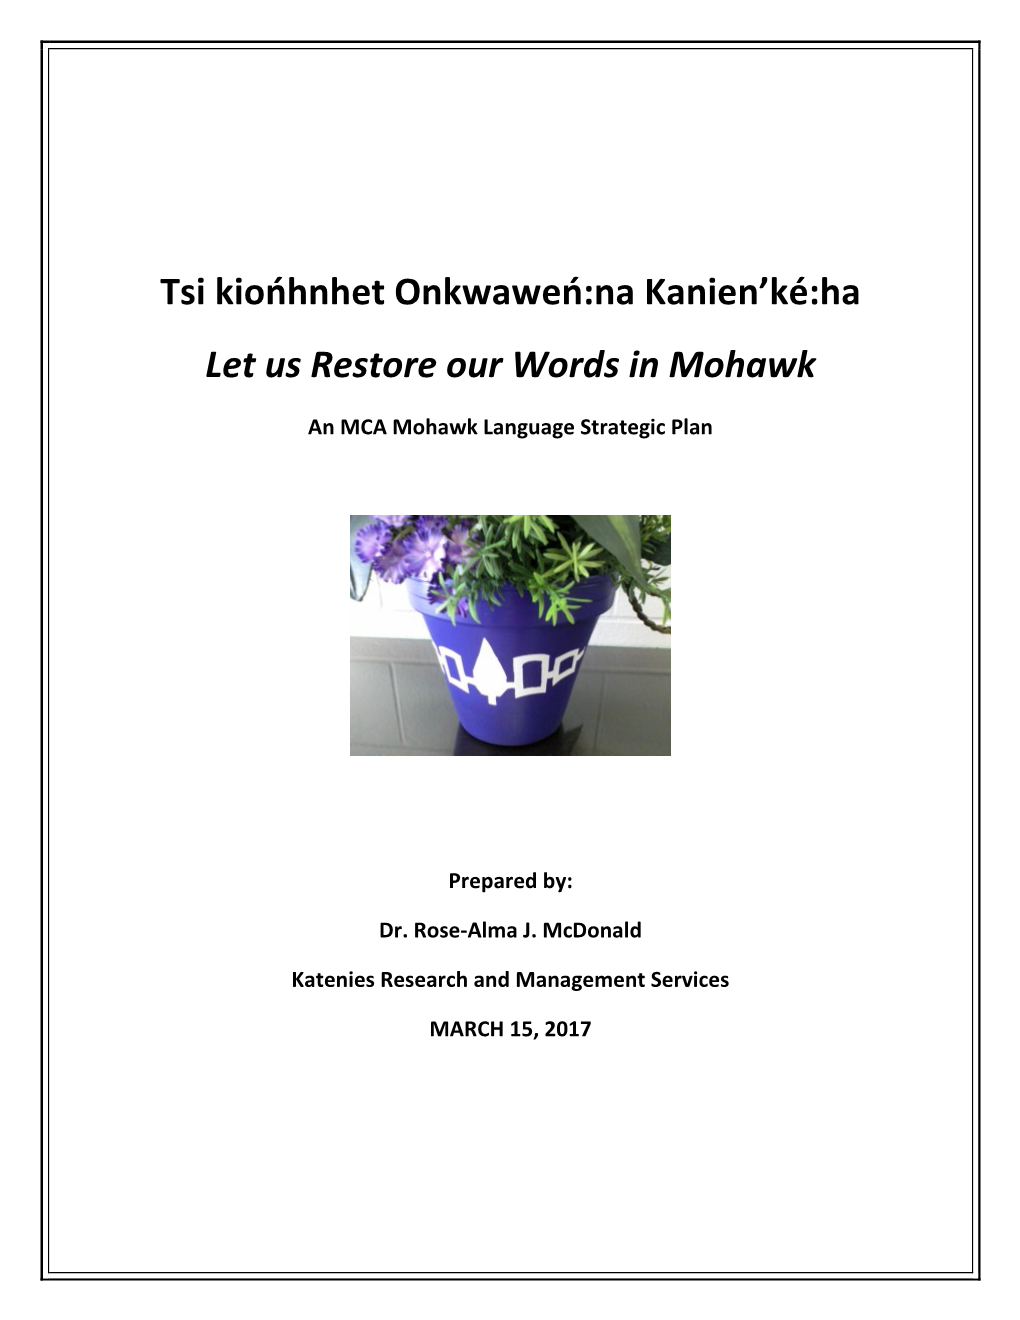 Download Mca Mohawk Language Strategic Plan